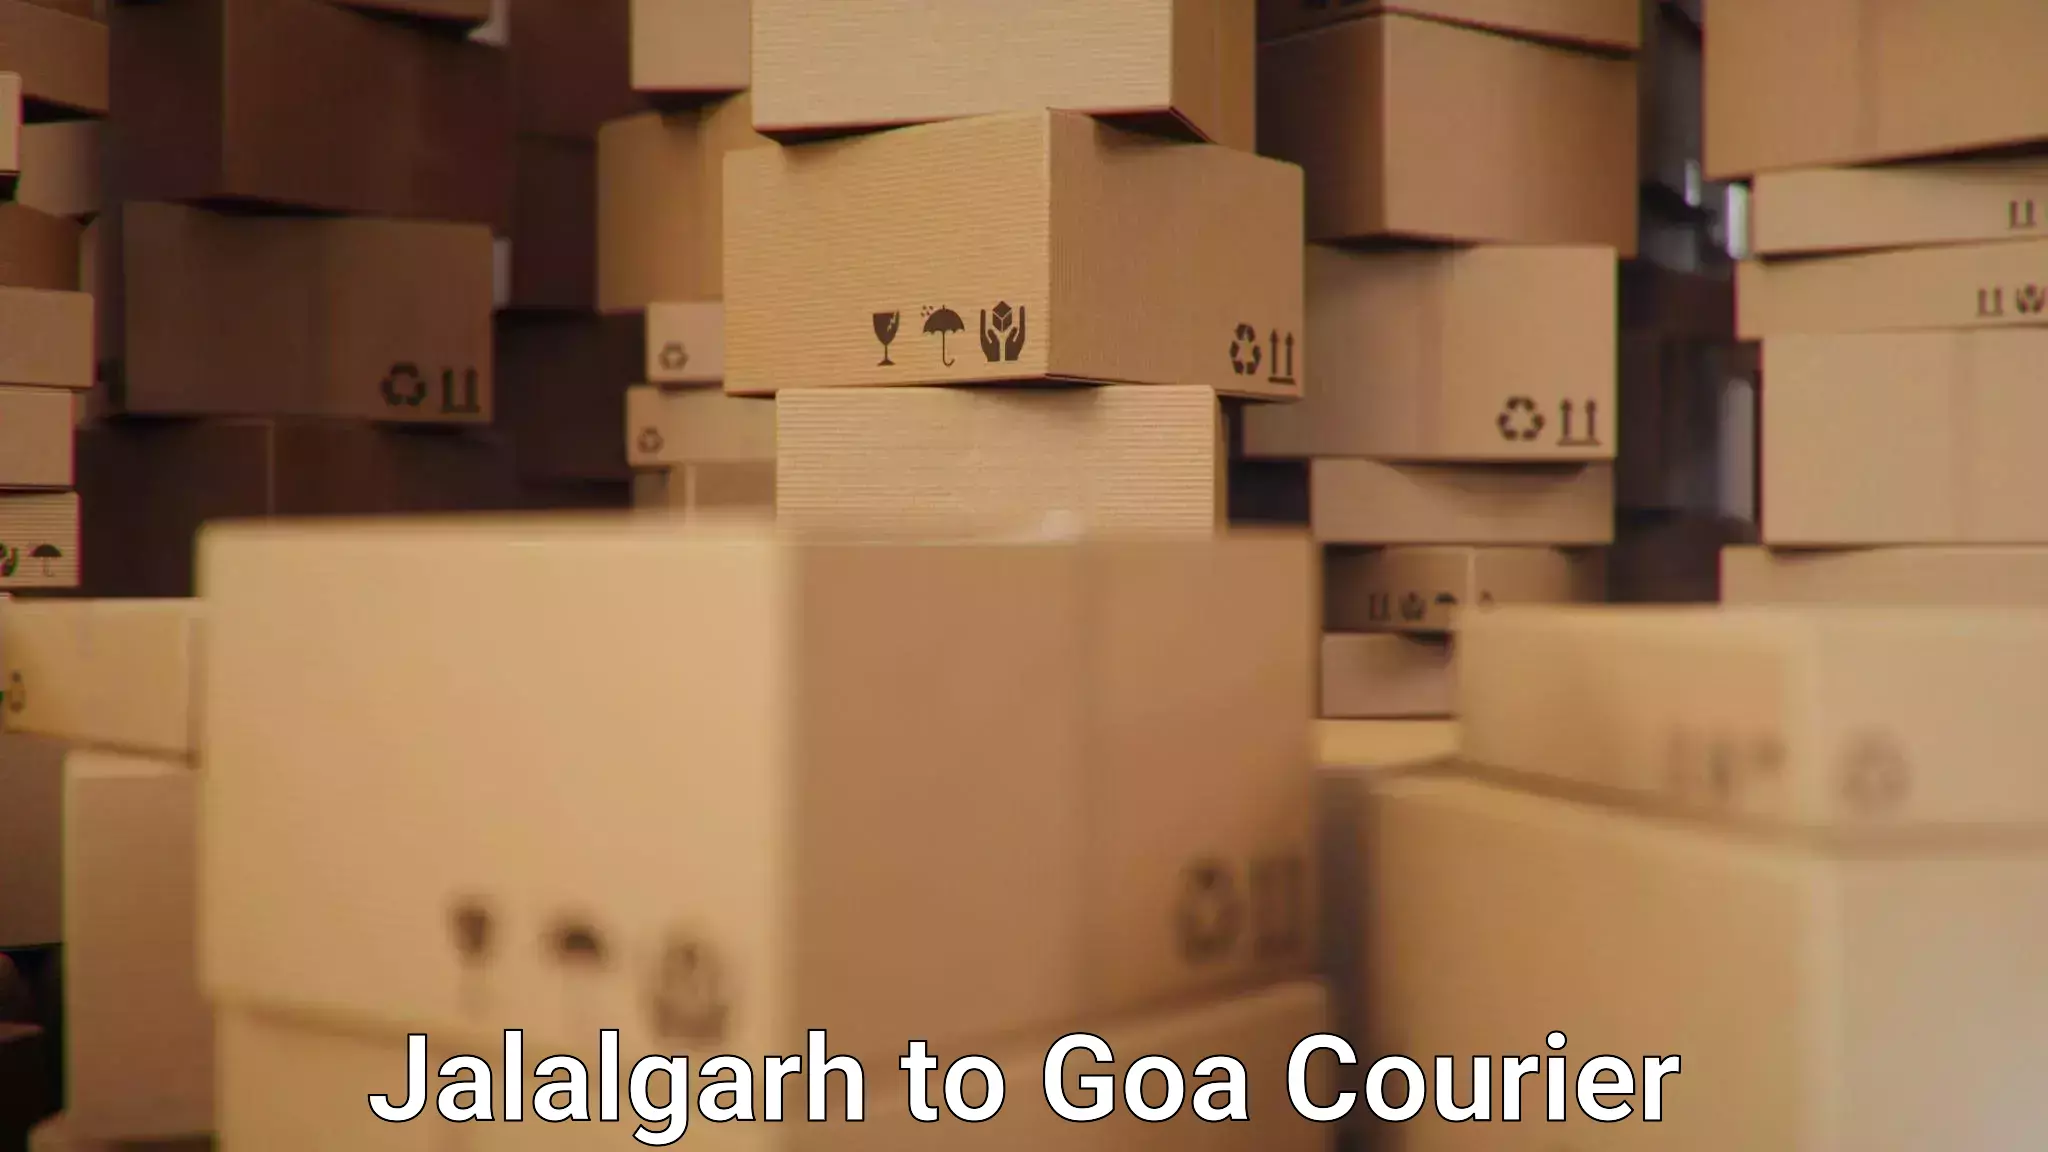 Urgent courier needs Jalalgarh to South Goa